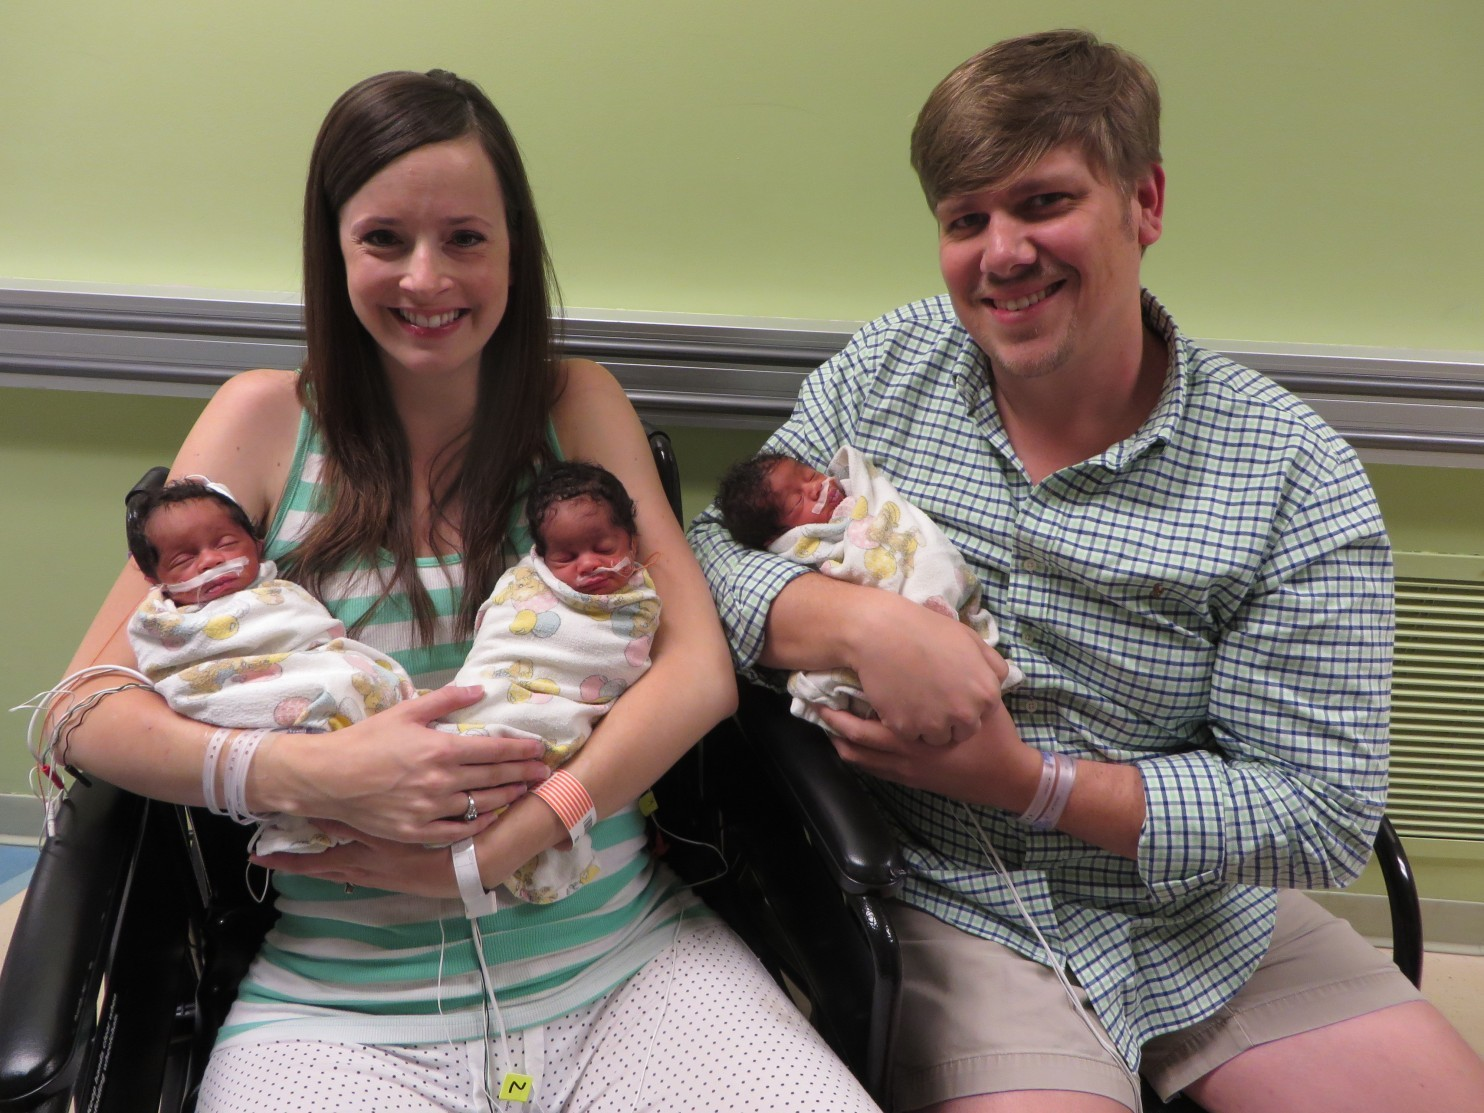 Embryo adoption and the Halbert family